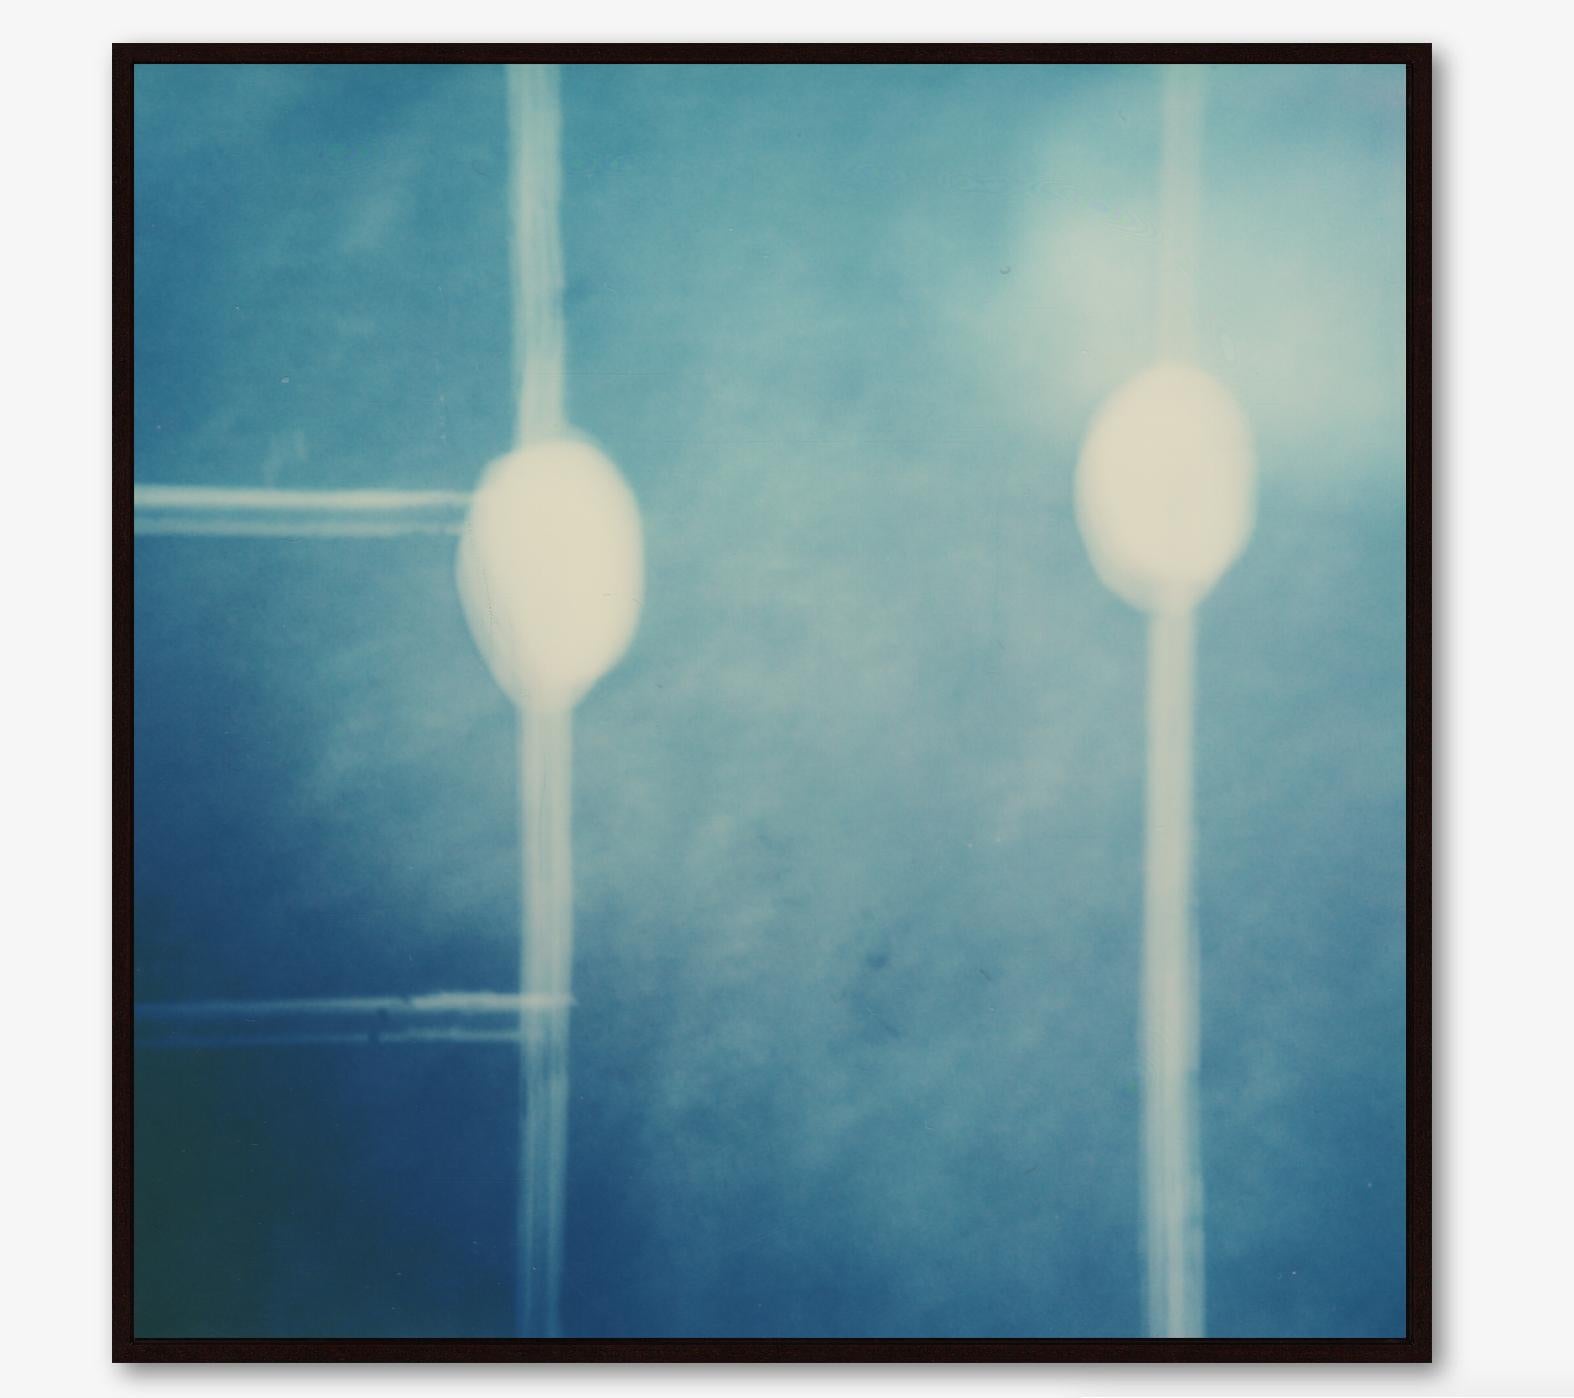 Dot Connector - Film im Cyanotype-Stil, gerahmter Fotodruck (Zeitgenössisch), Print, von Pia Clodi